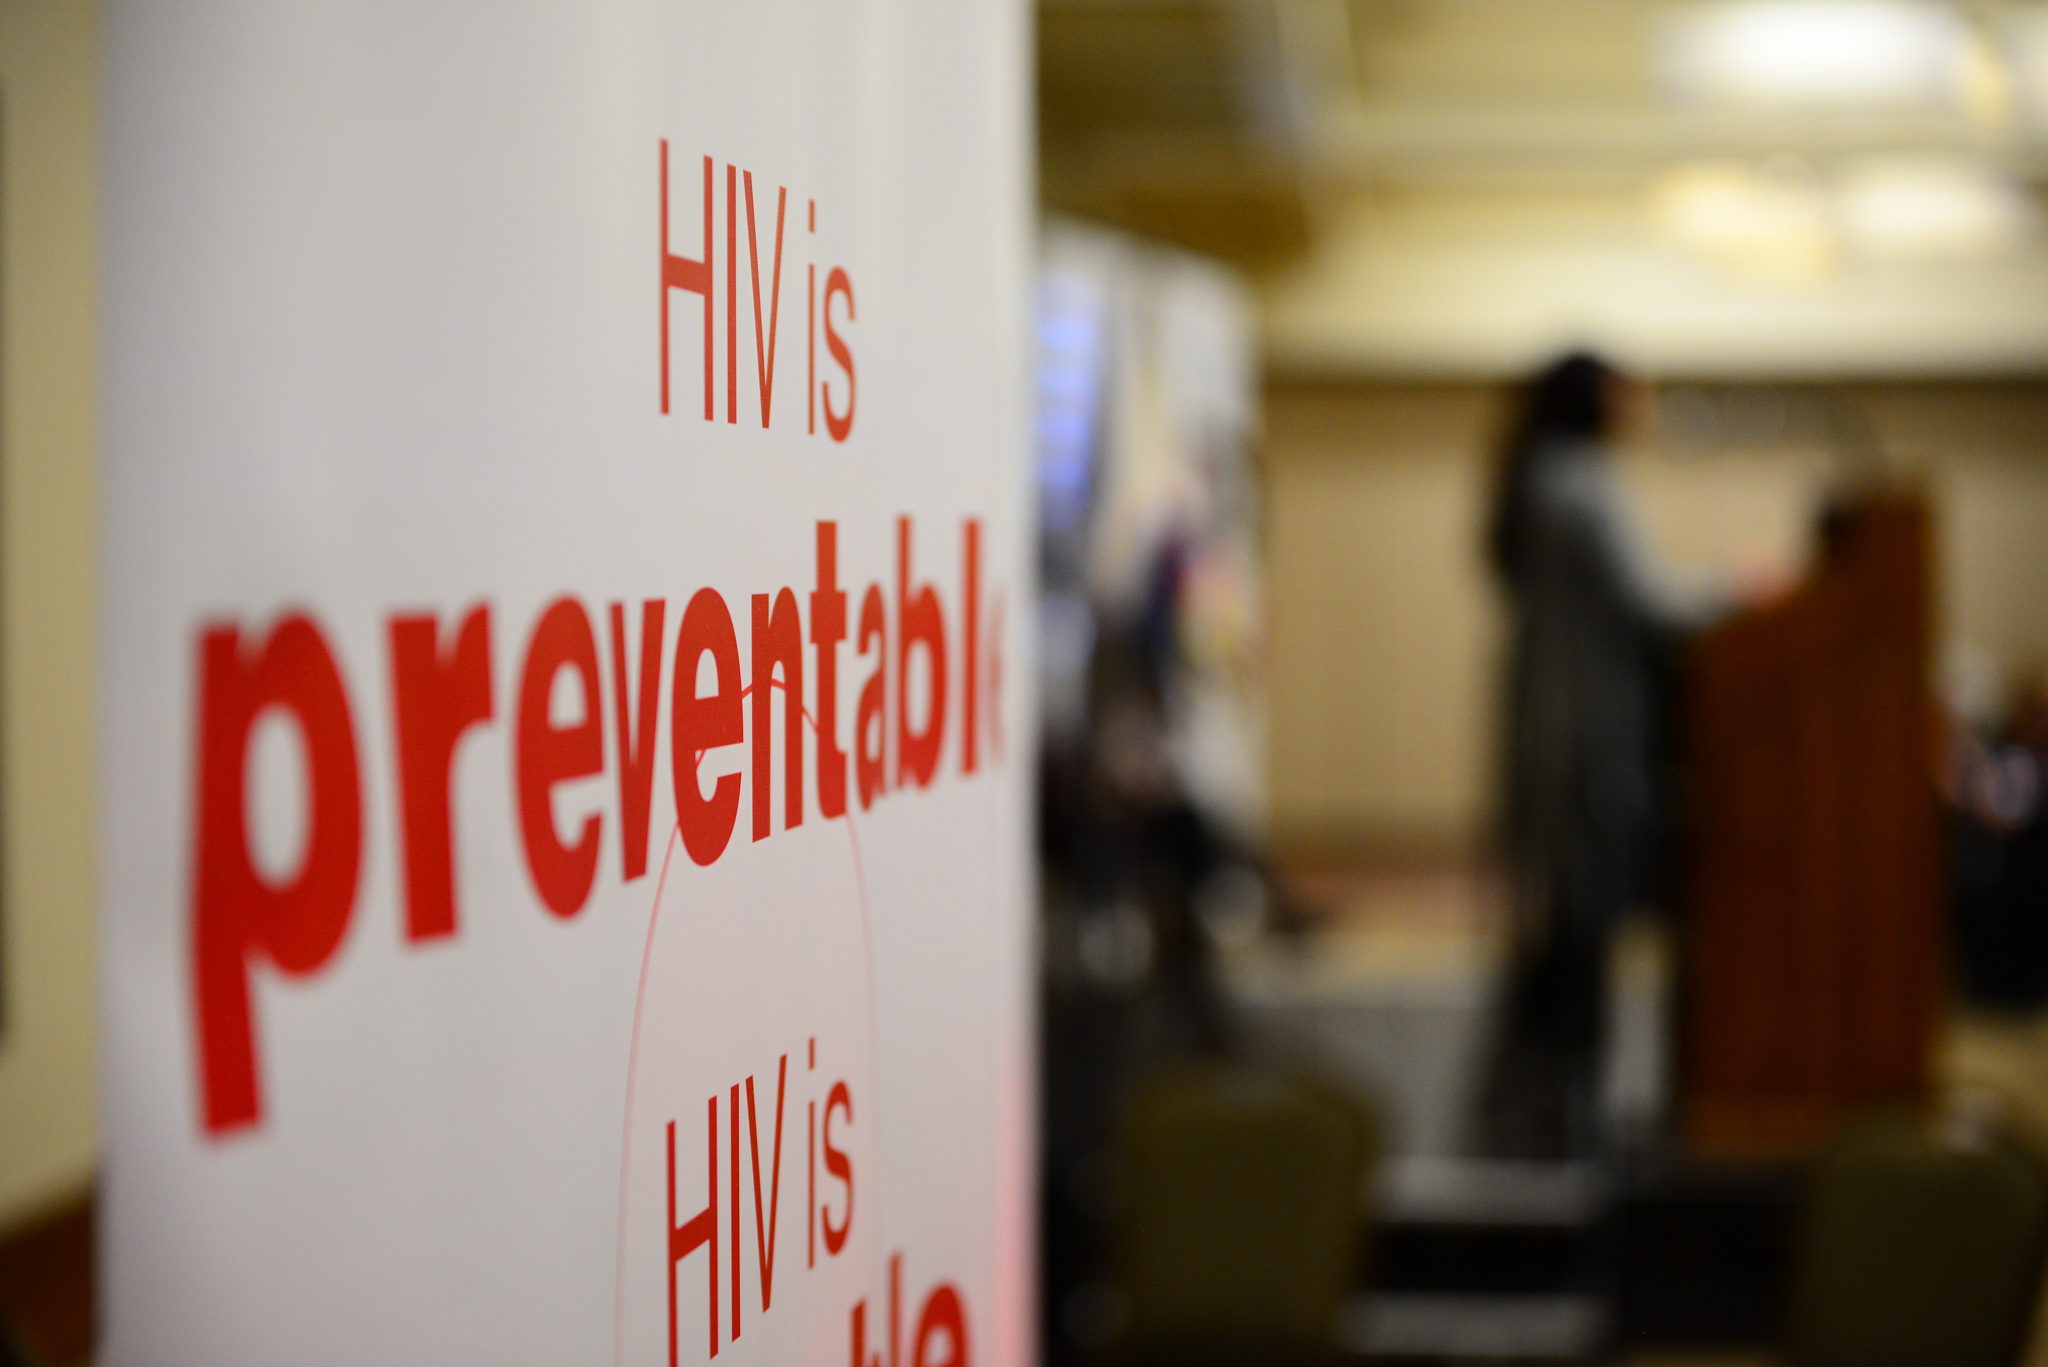 Prevenção do VIH